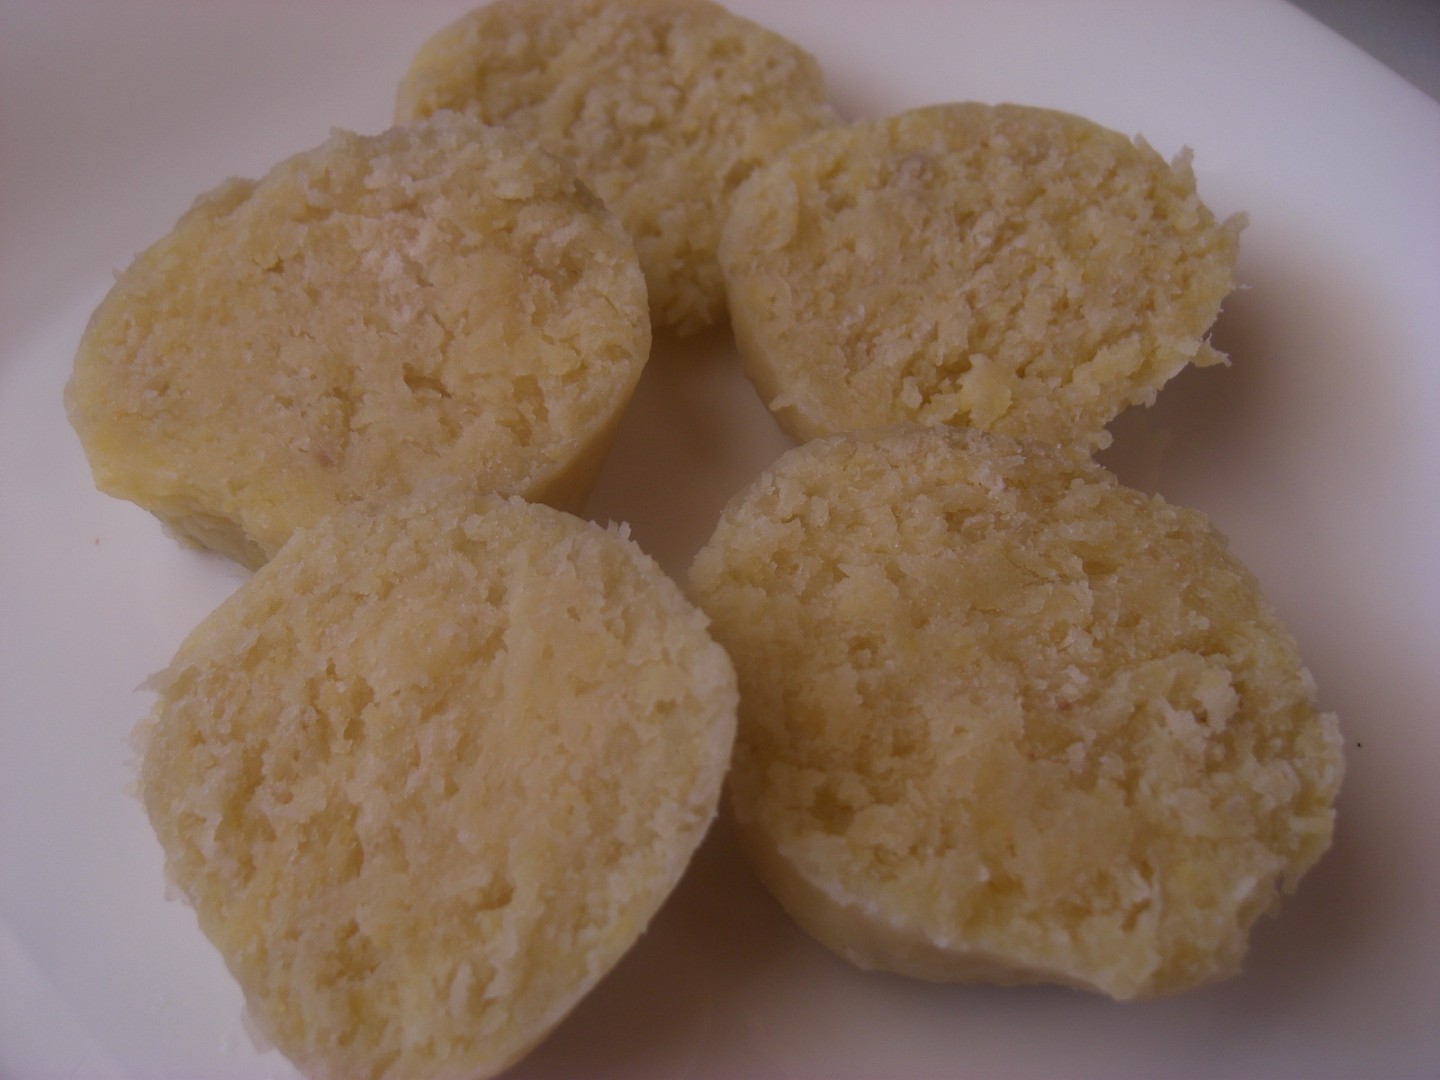 Bosáky - knedlíky napůl ze syrových a napůl z vařených brambor